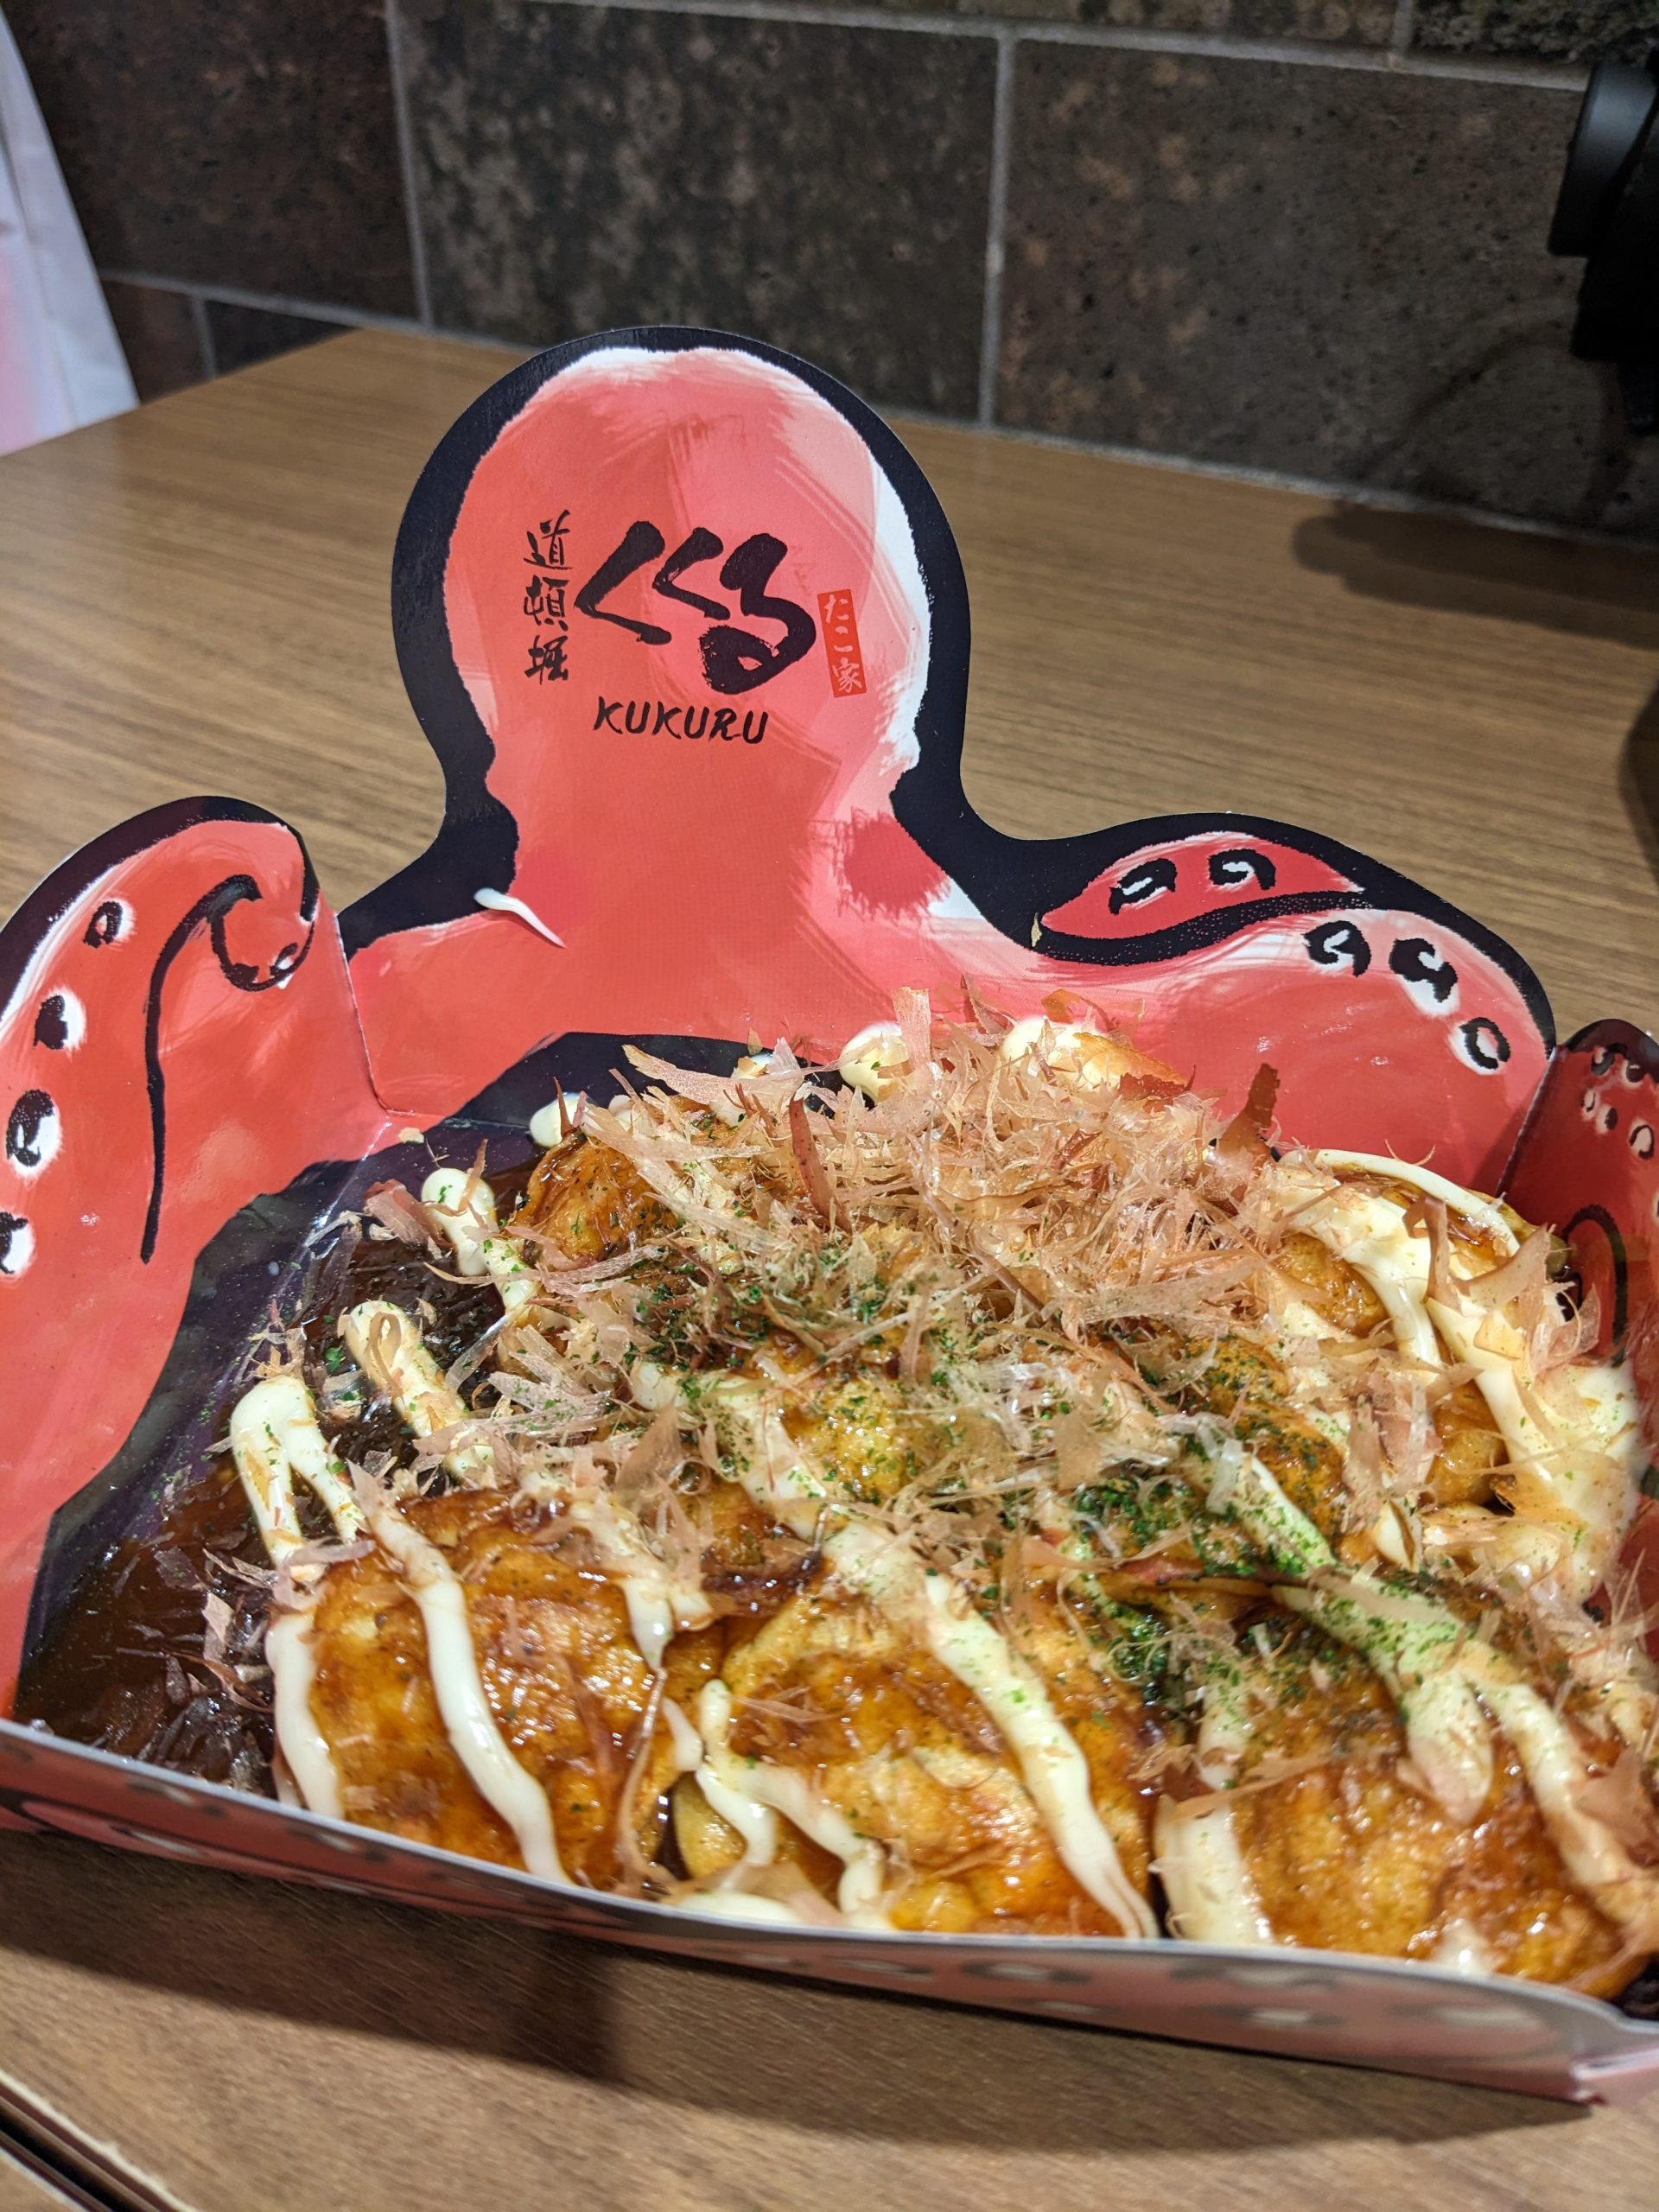 A tray of takoyaki.